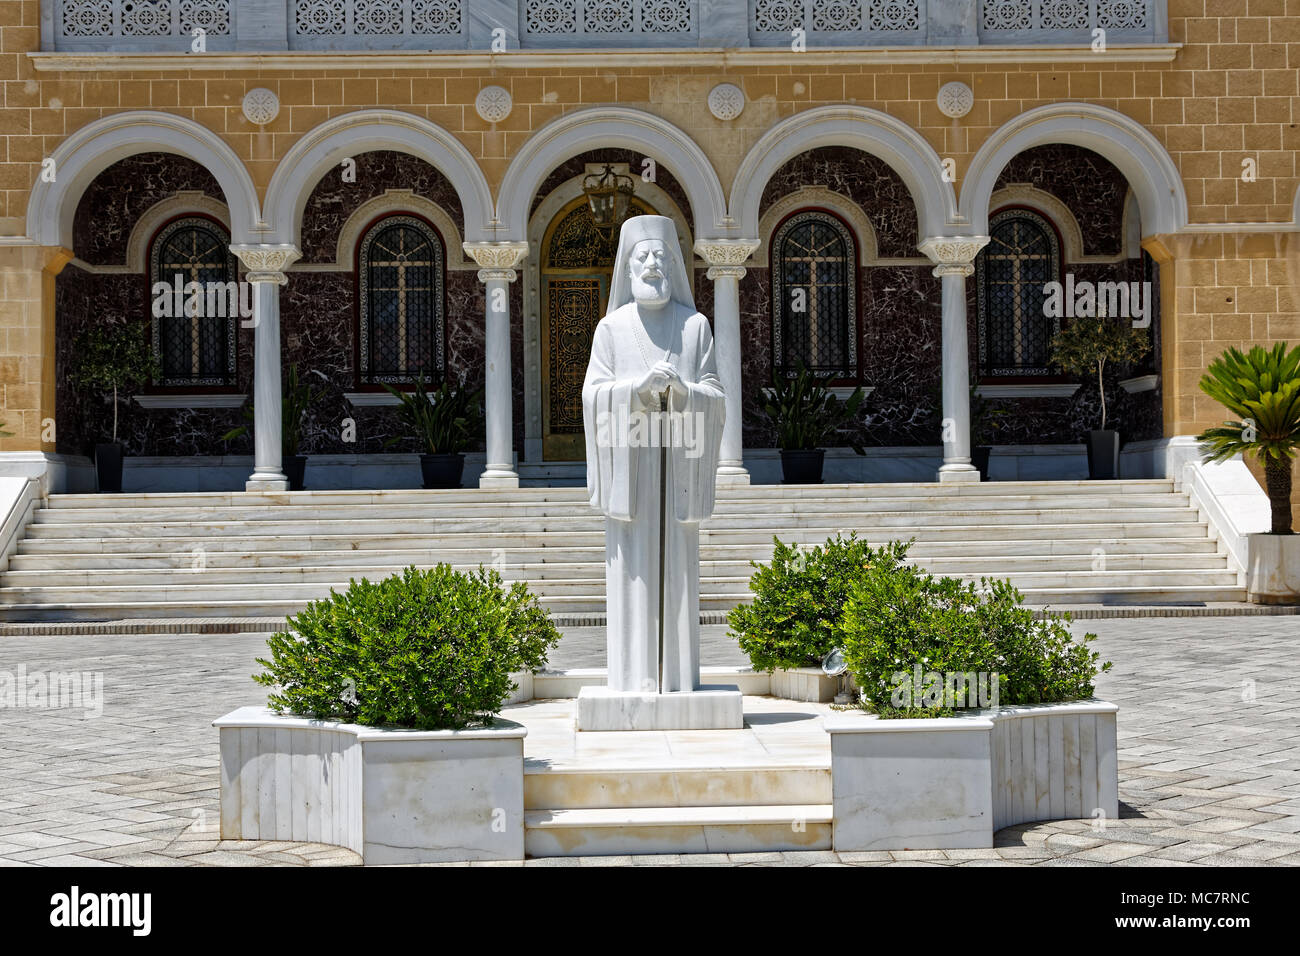 Nikosia eine geteilte Stadt - Nicosia a divided city. Archbishop's Palace - Palast des Erzbischofs. Stock Photo